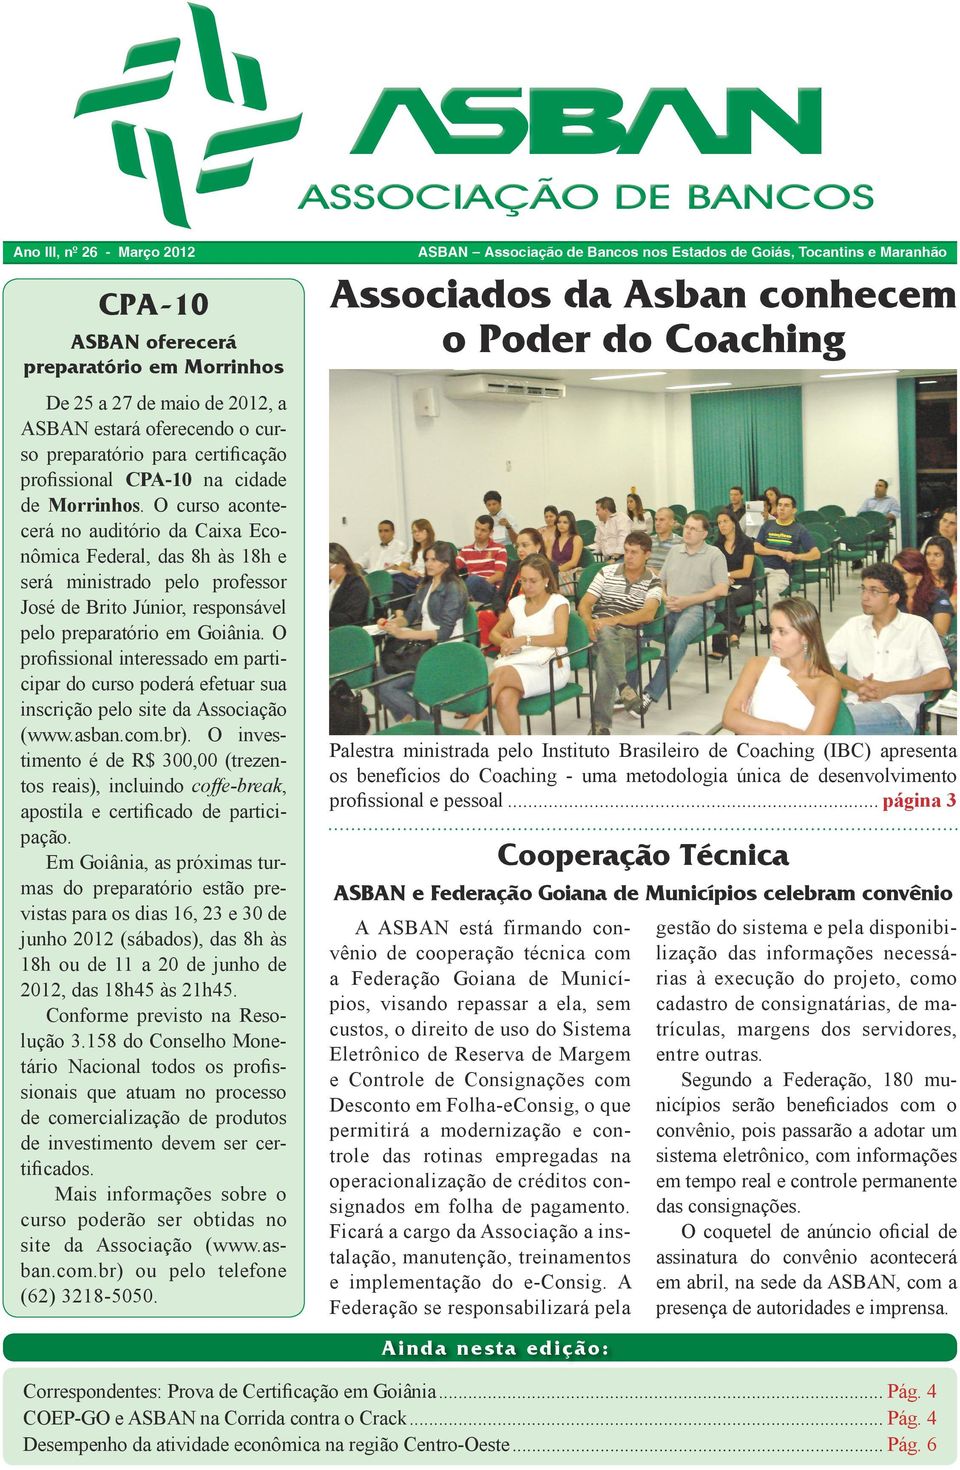 O profissional interessado em participar do curso poderá efetuar sua inscrição pelo site da Associação (www.asban.com.br).